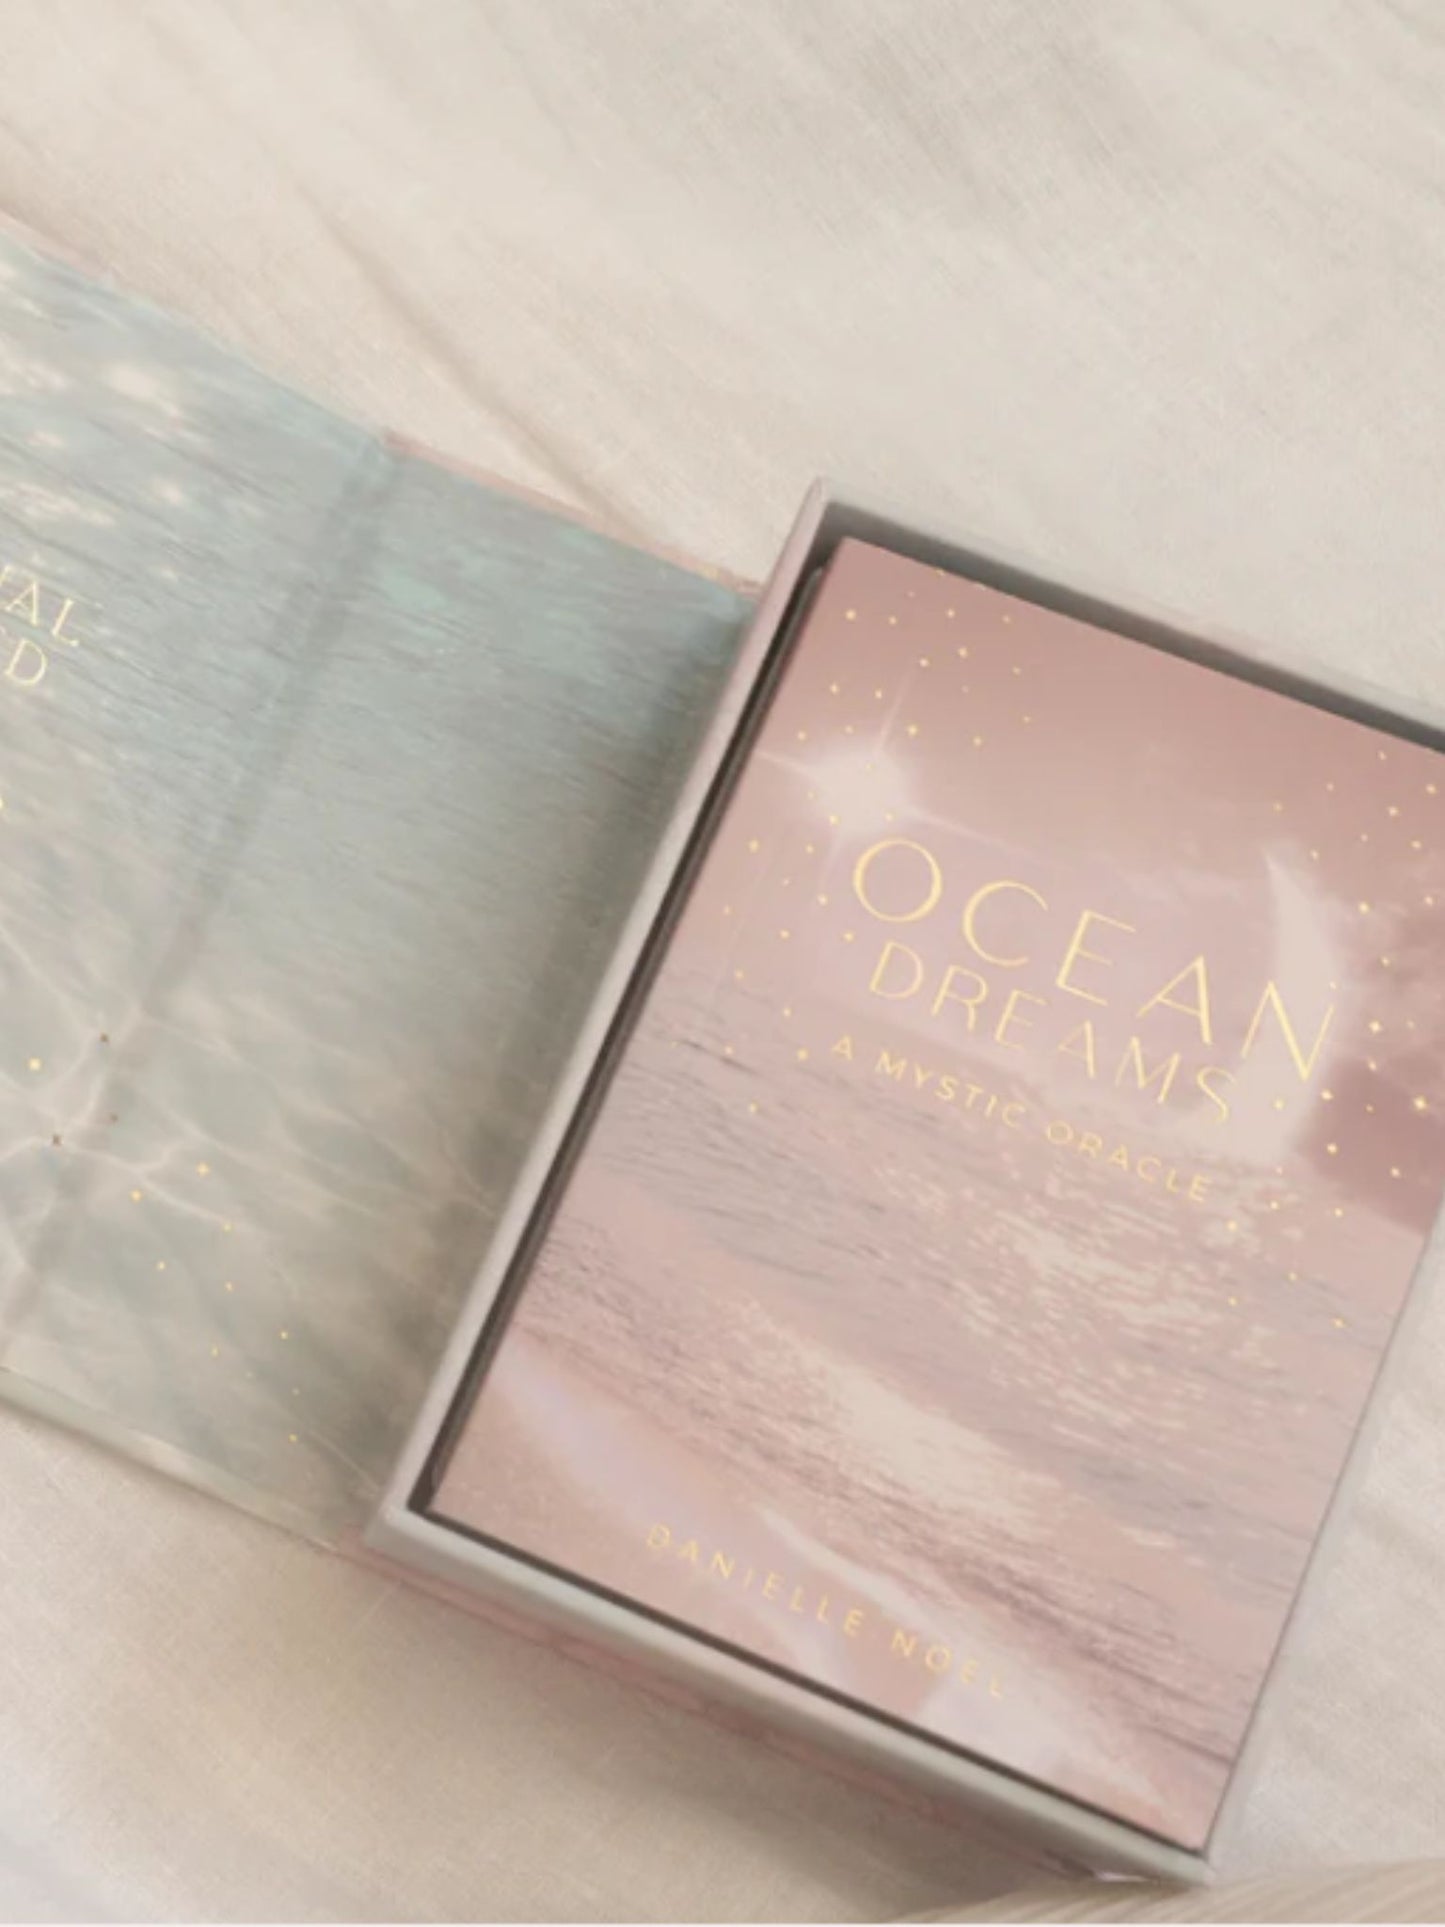 OCEAN DREAMS - A MYSTIC ORACLE . Orakel Karten Deck von Danielle Noel